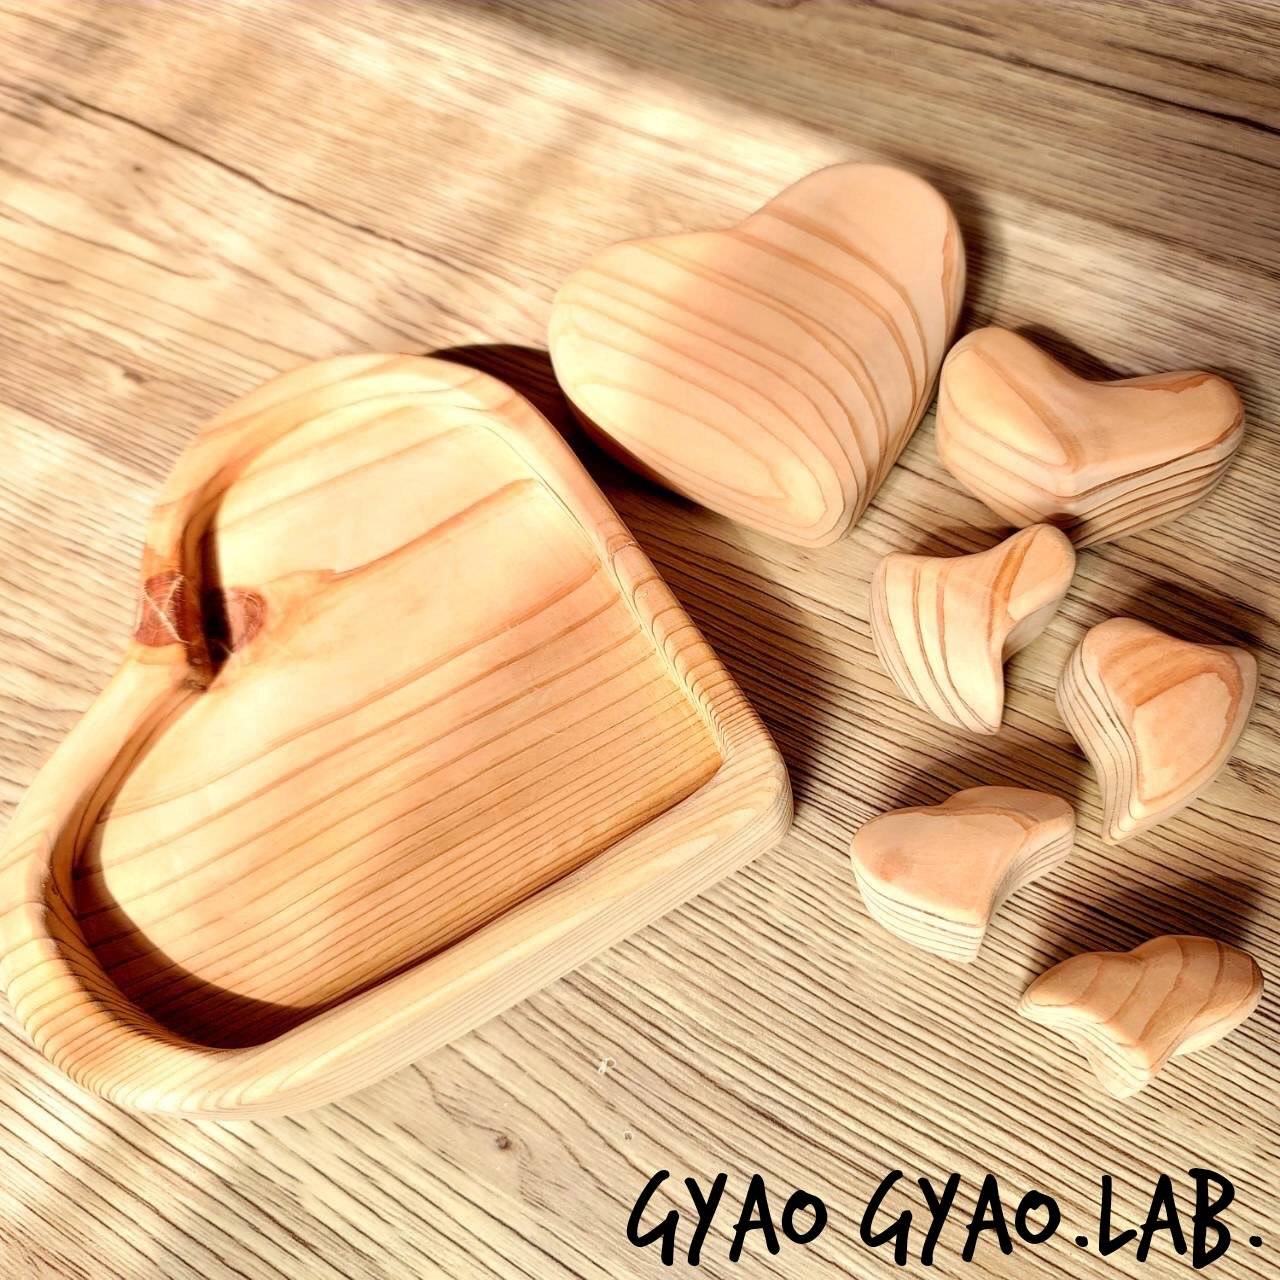 大好きby Gyao Gyao.lab.